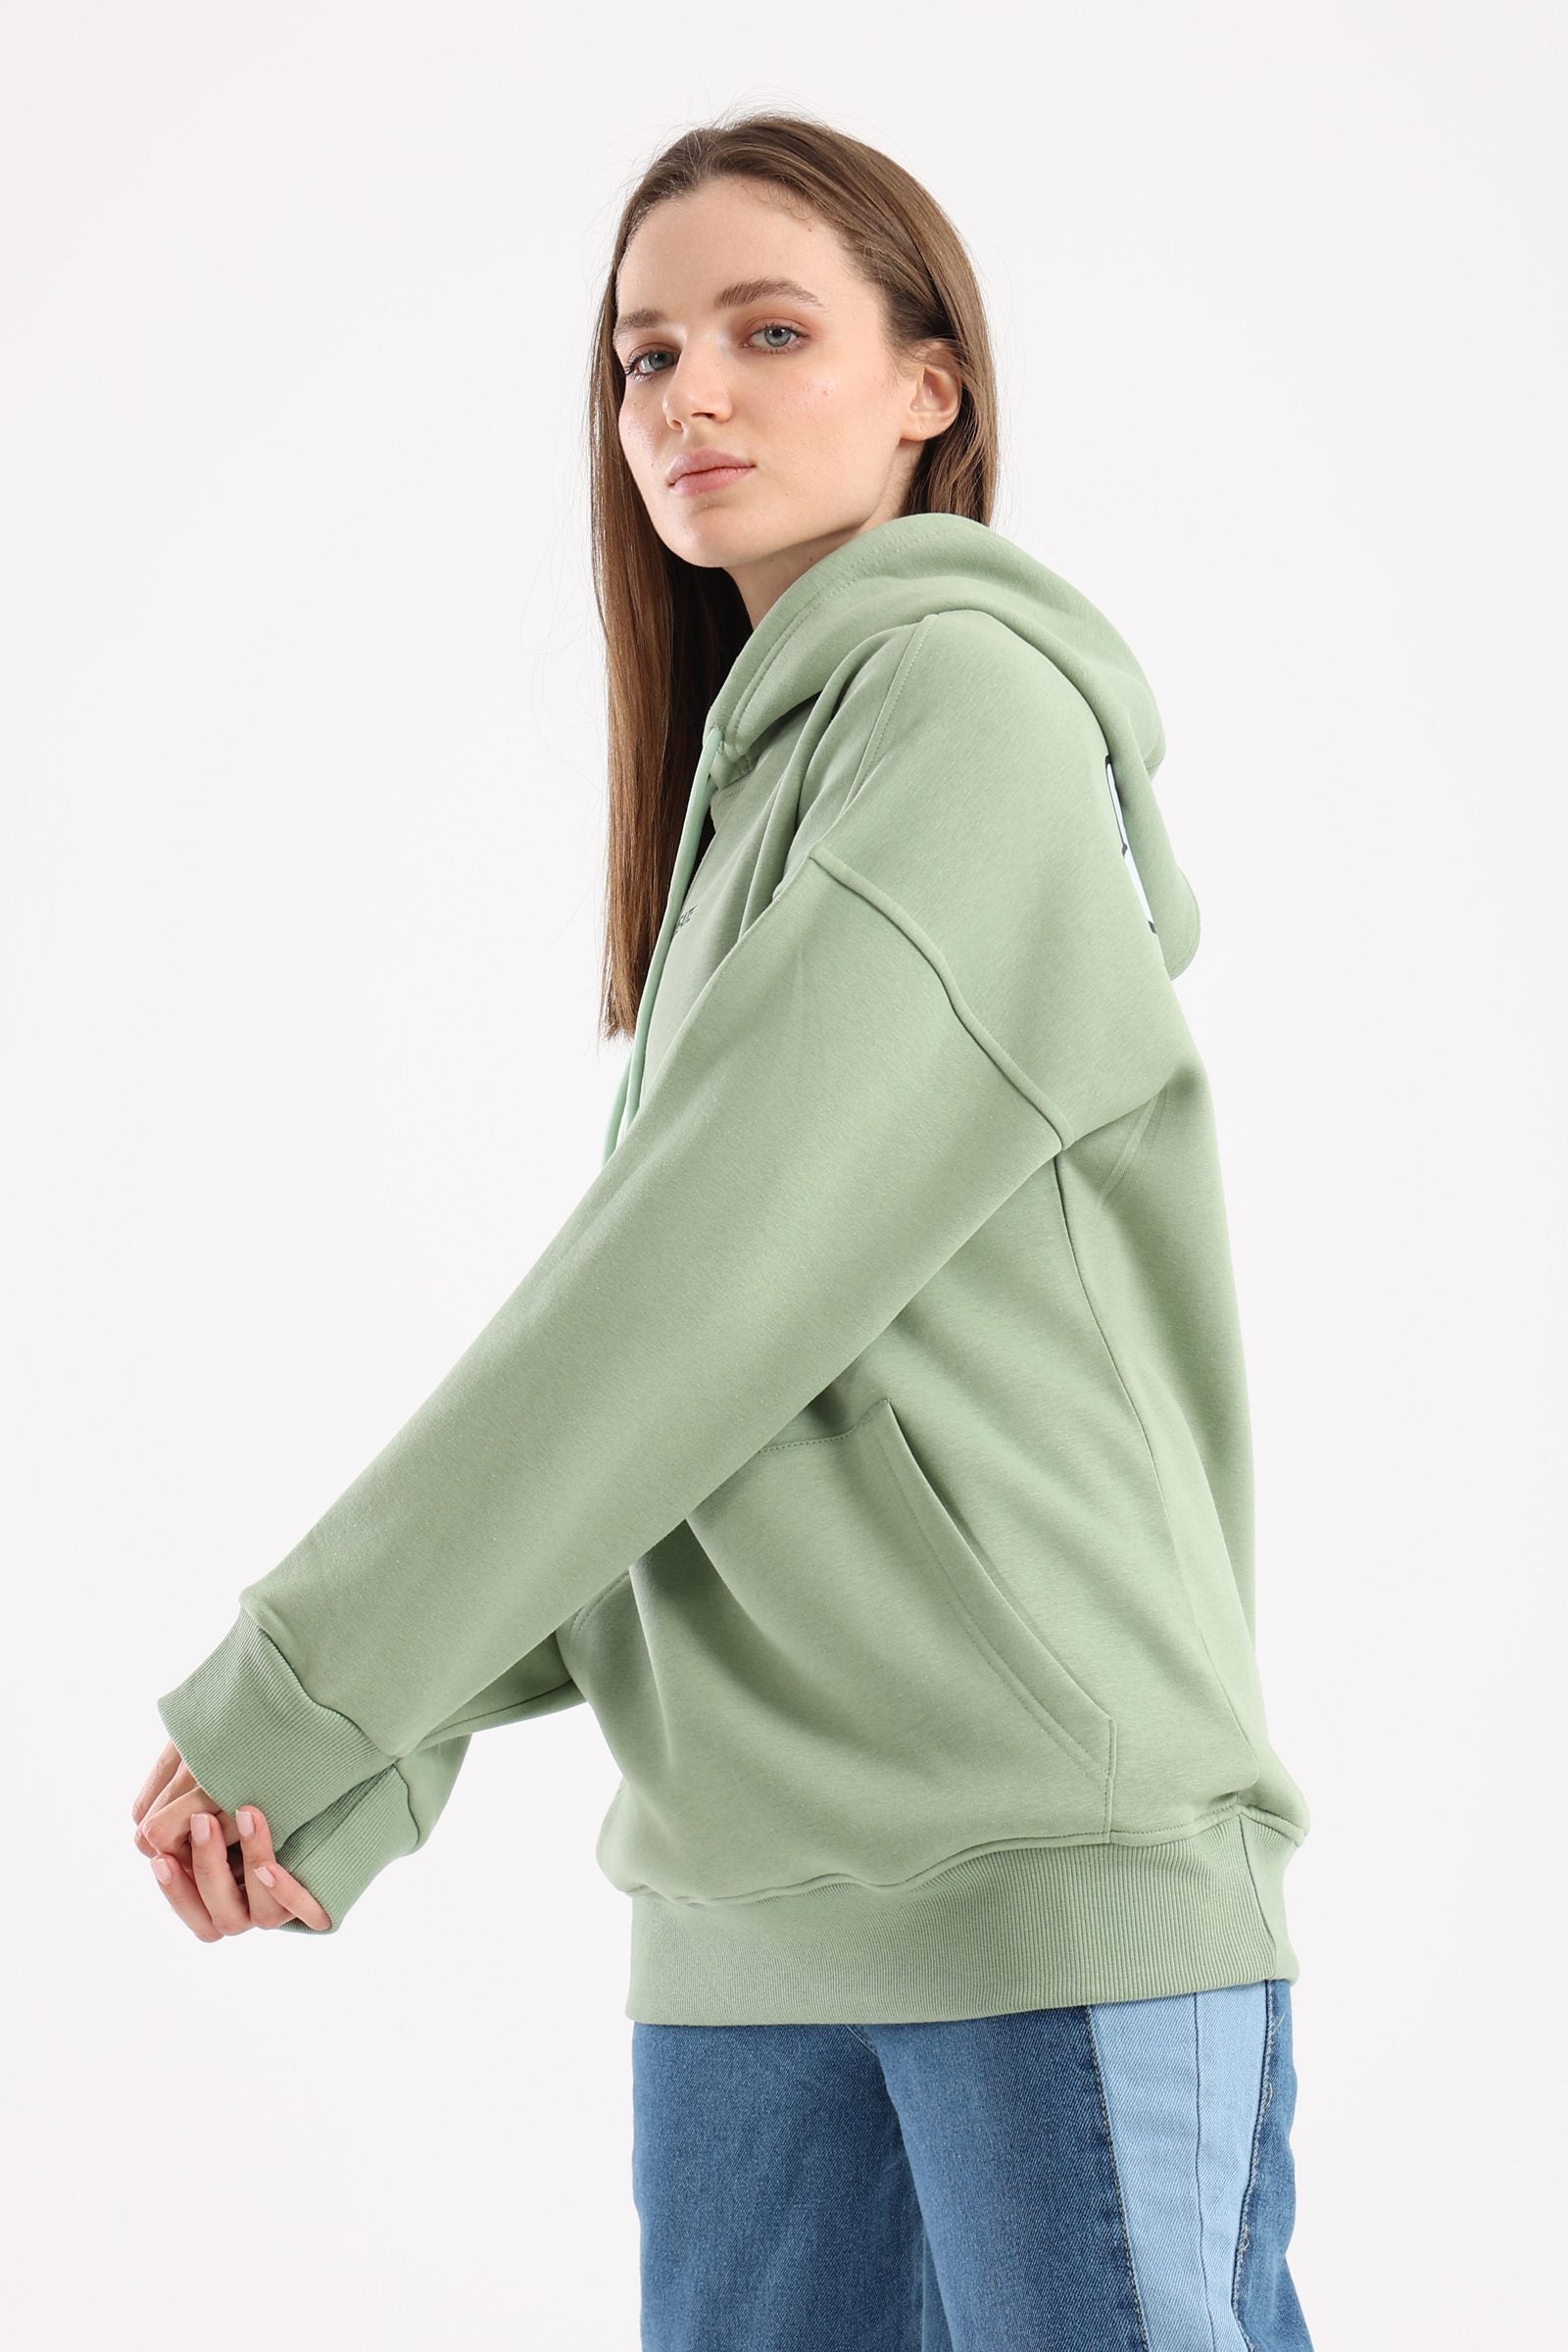 Believe in your ideas oversized hoodie in mint green